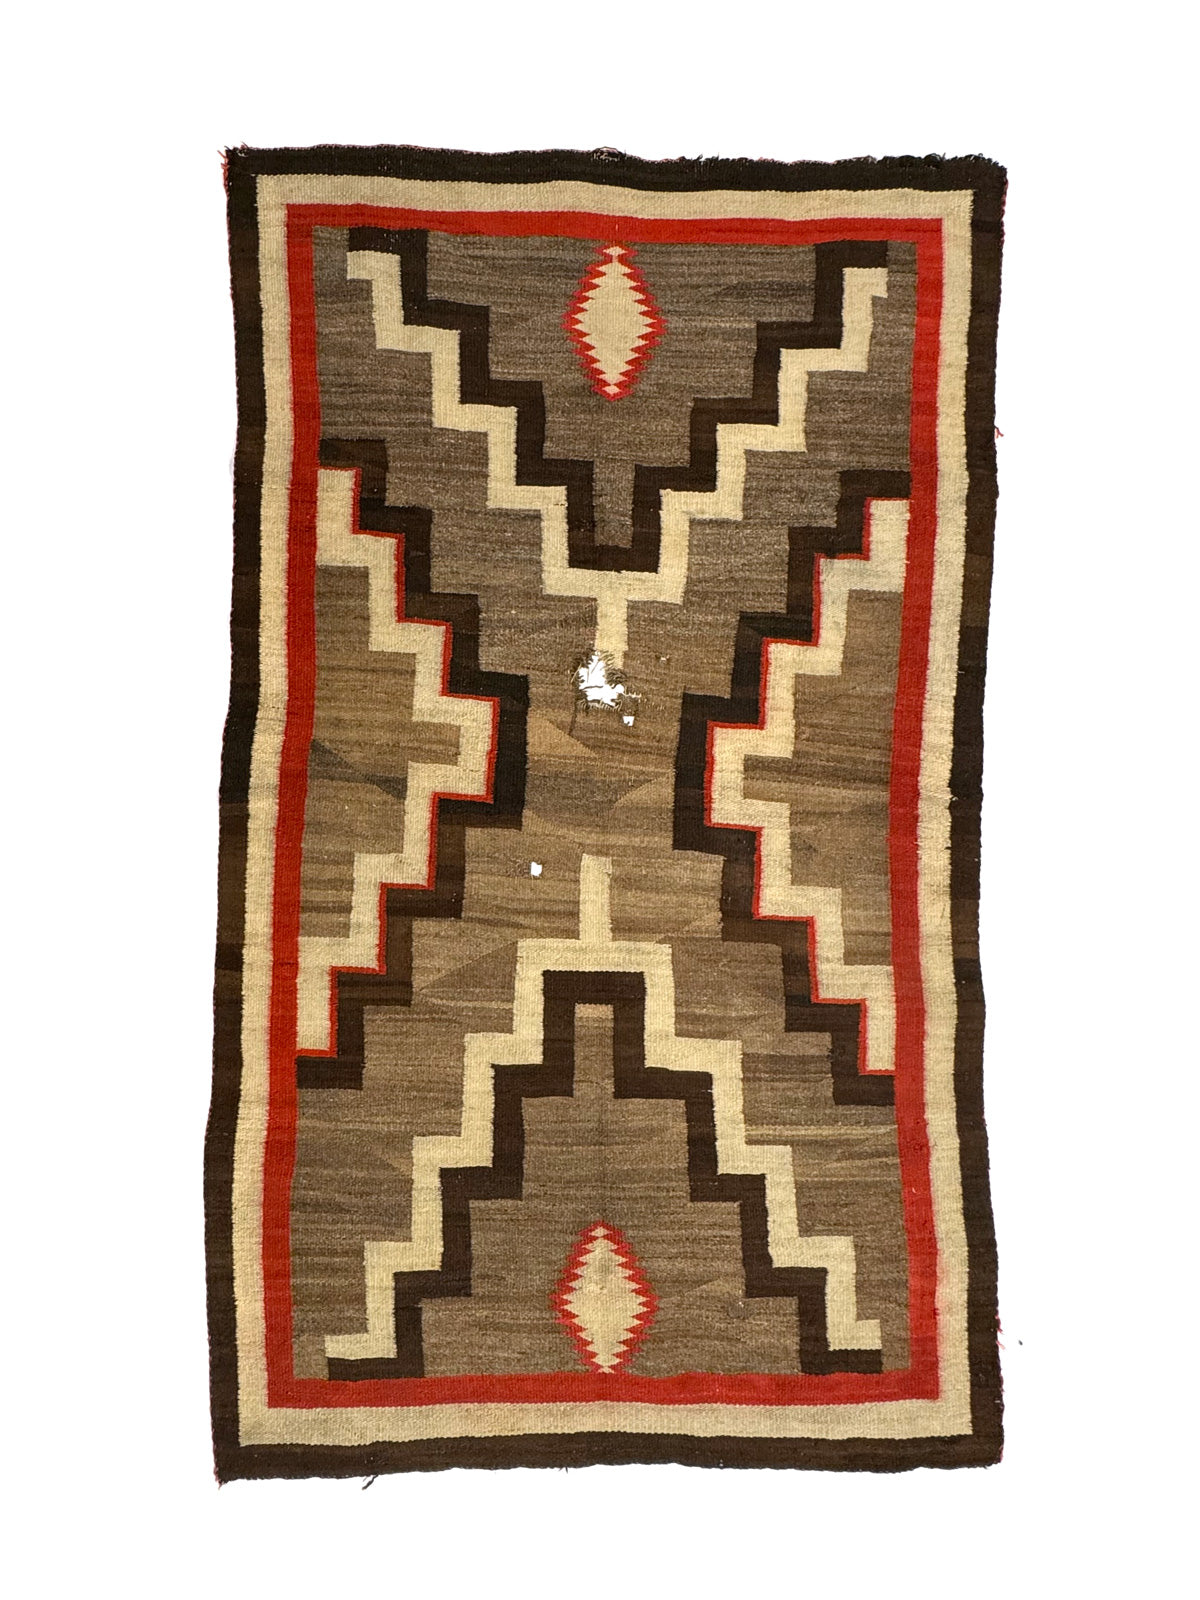 Navajo Ganado Rug c. 1910s, 94" x 55"